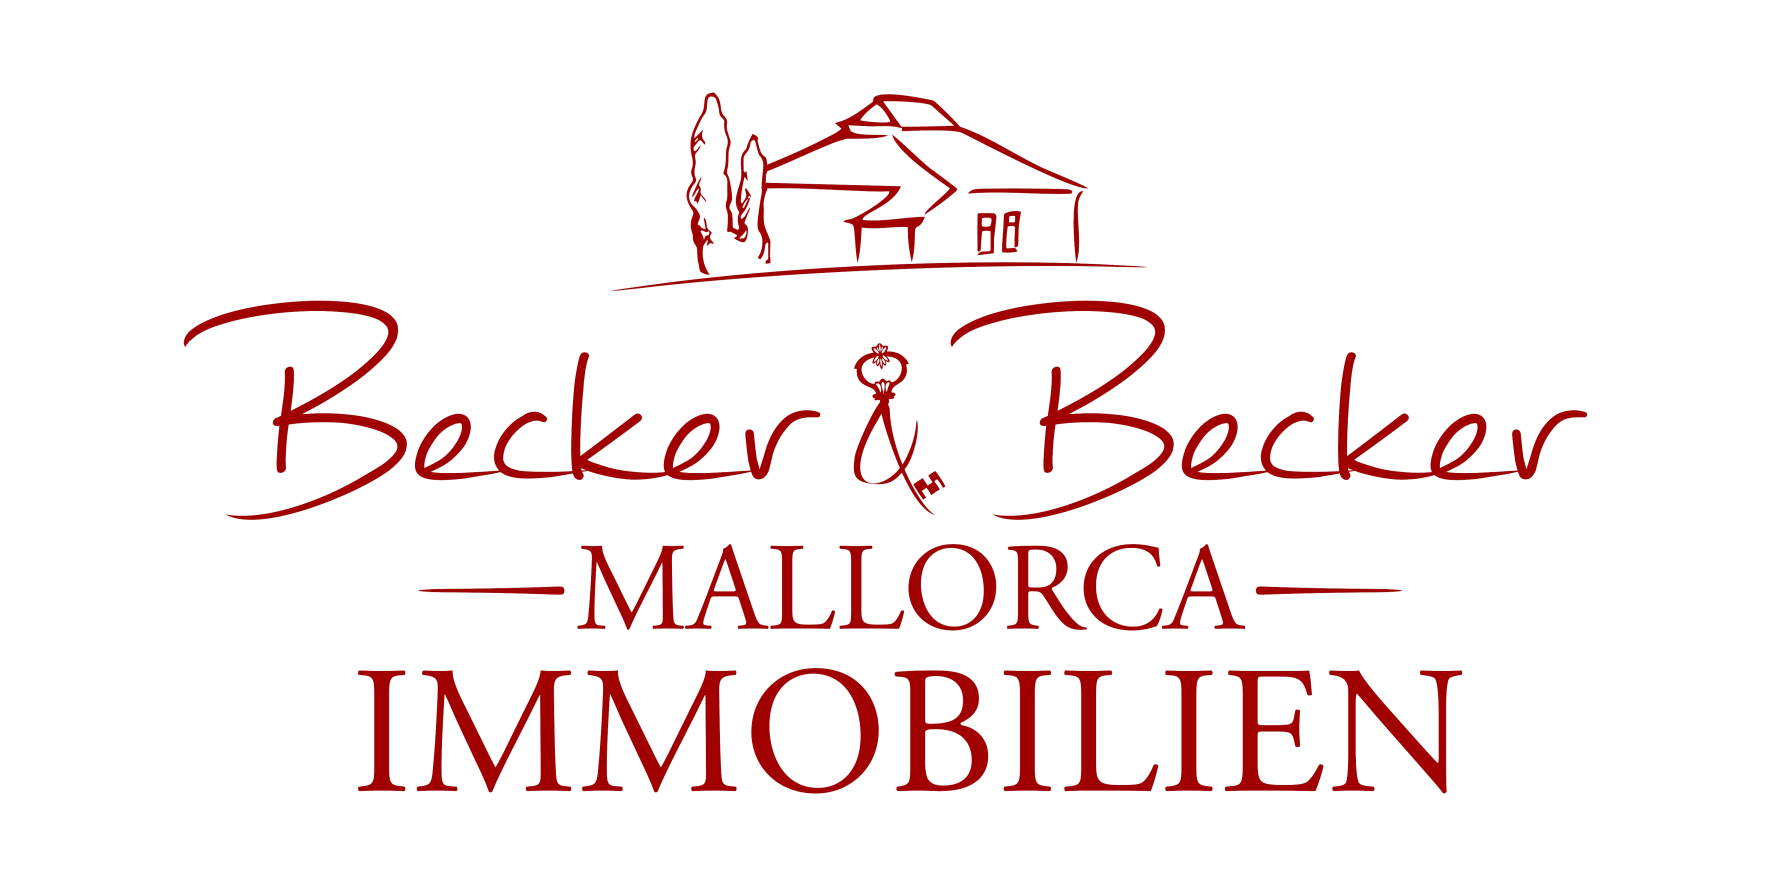 Becker& Becker Immobilien Mallorca